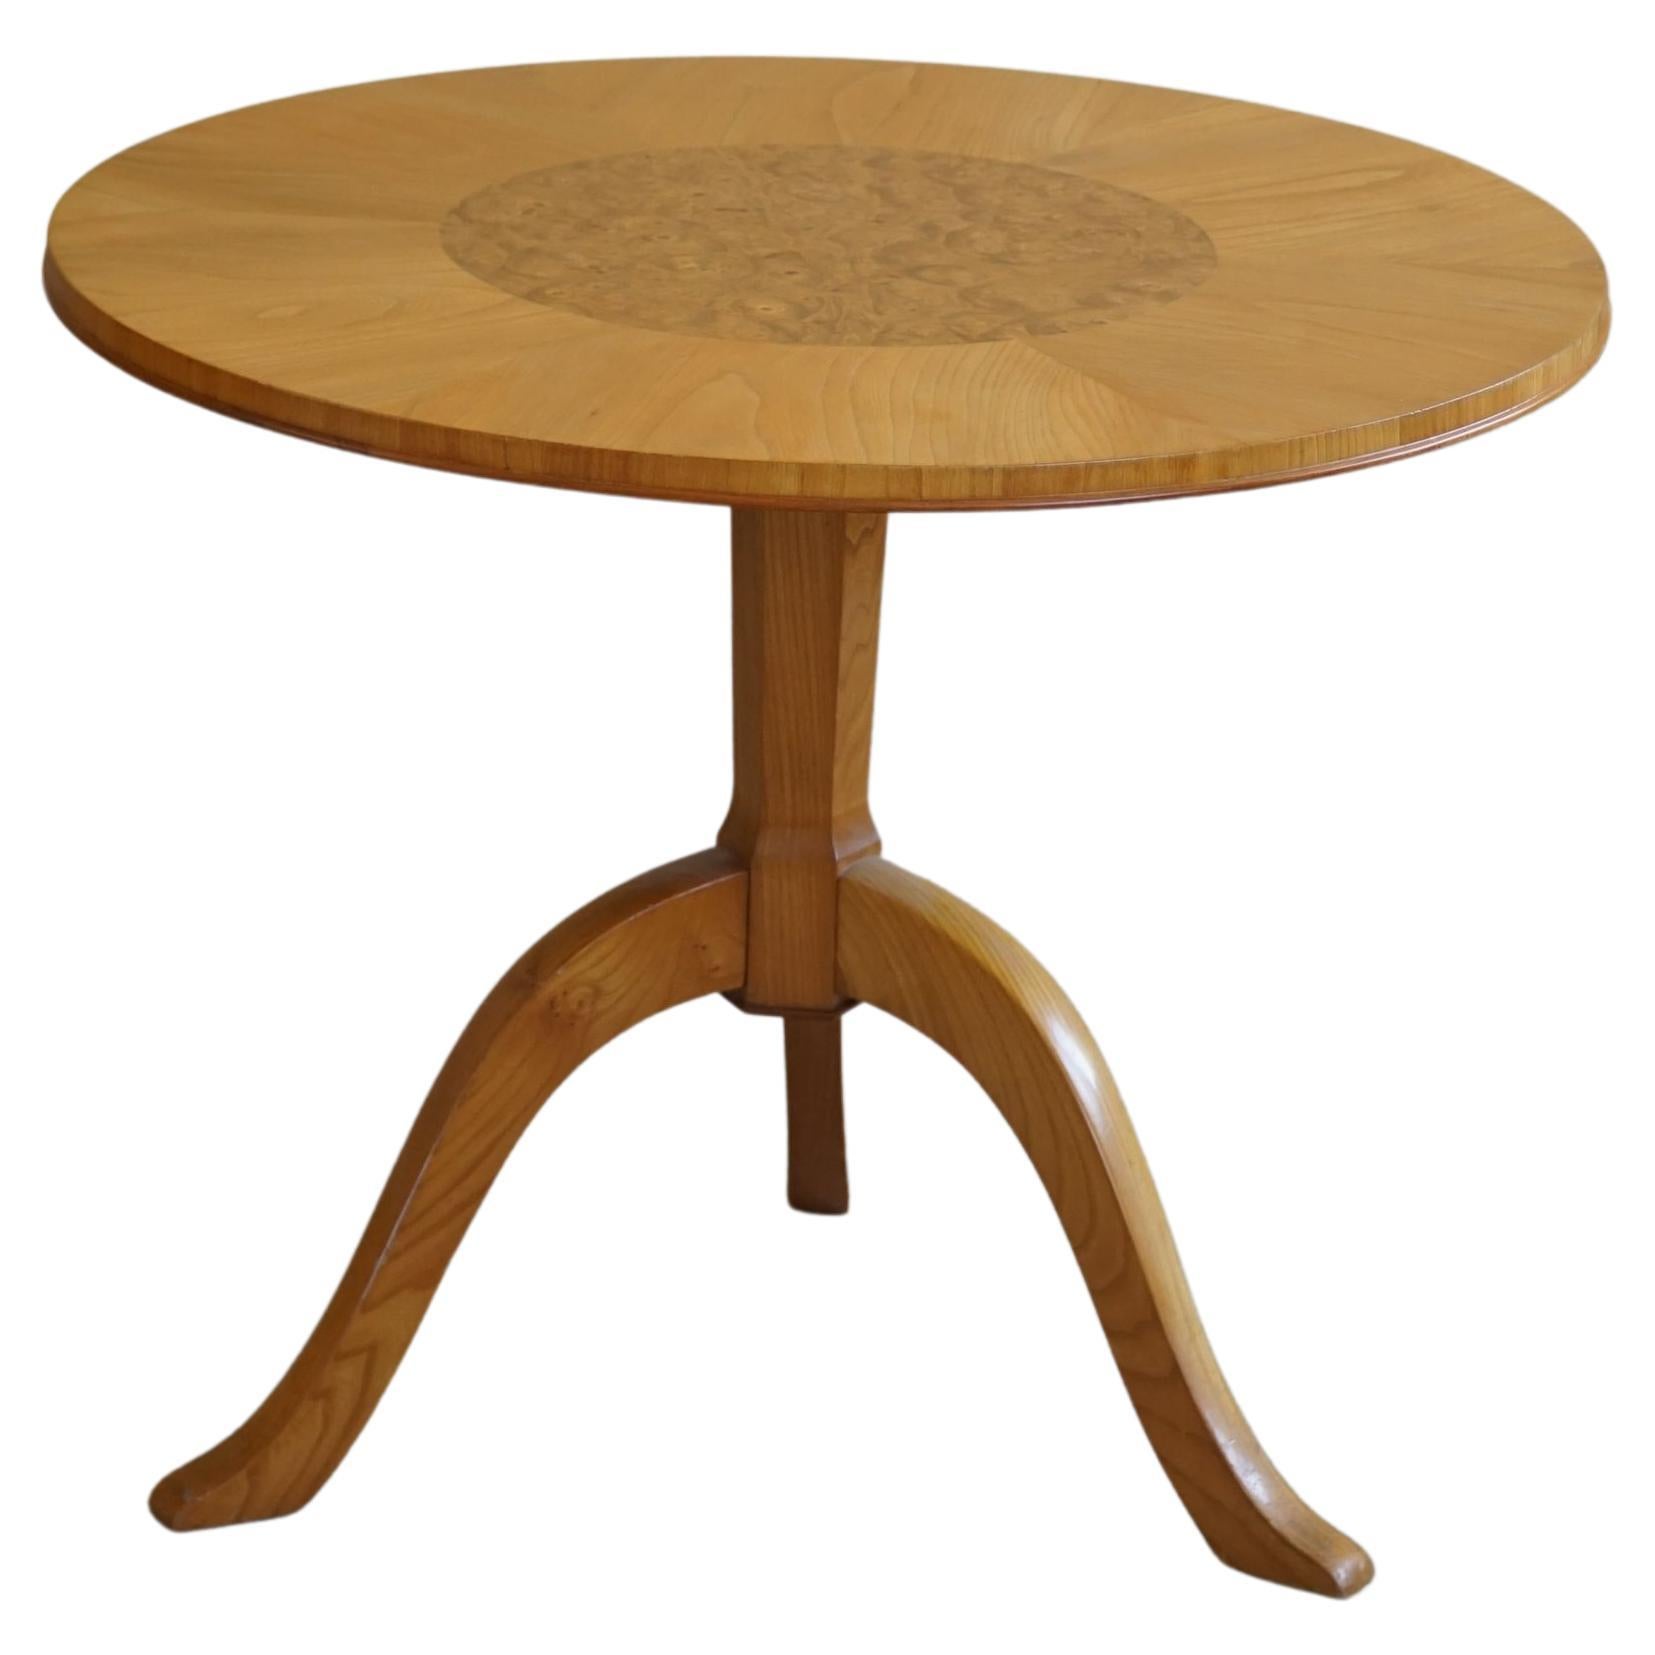 Table d'appoint/table basse ronde Art Déco suédoise en orme et bouleau, fabriquée dans les années 1940